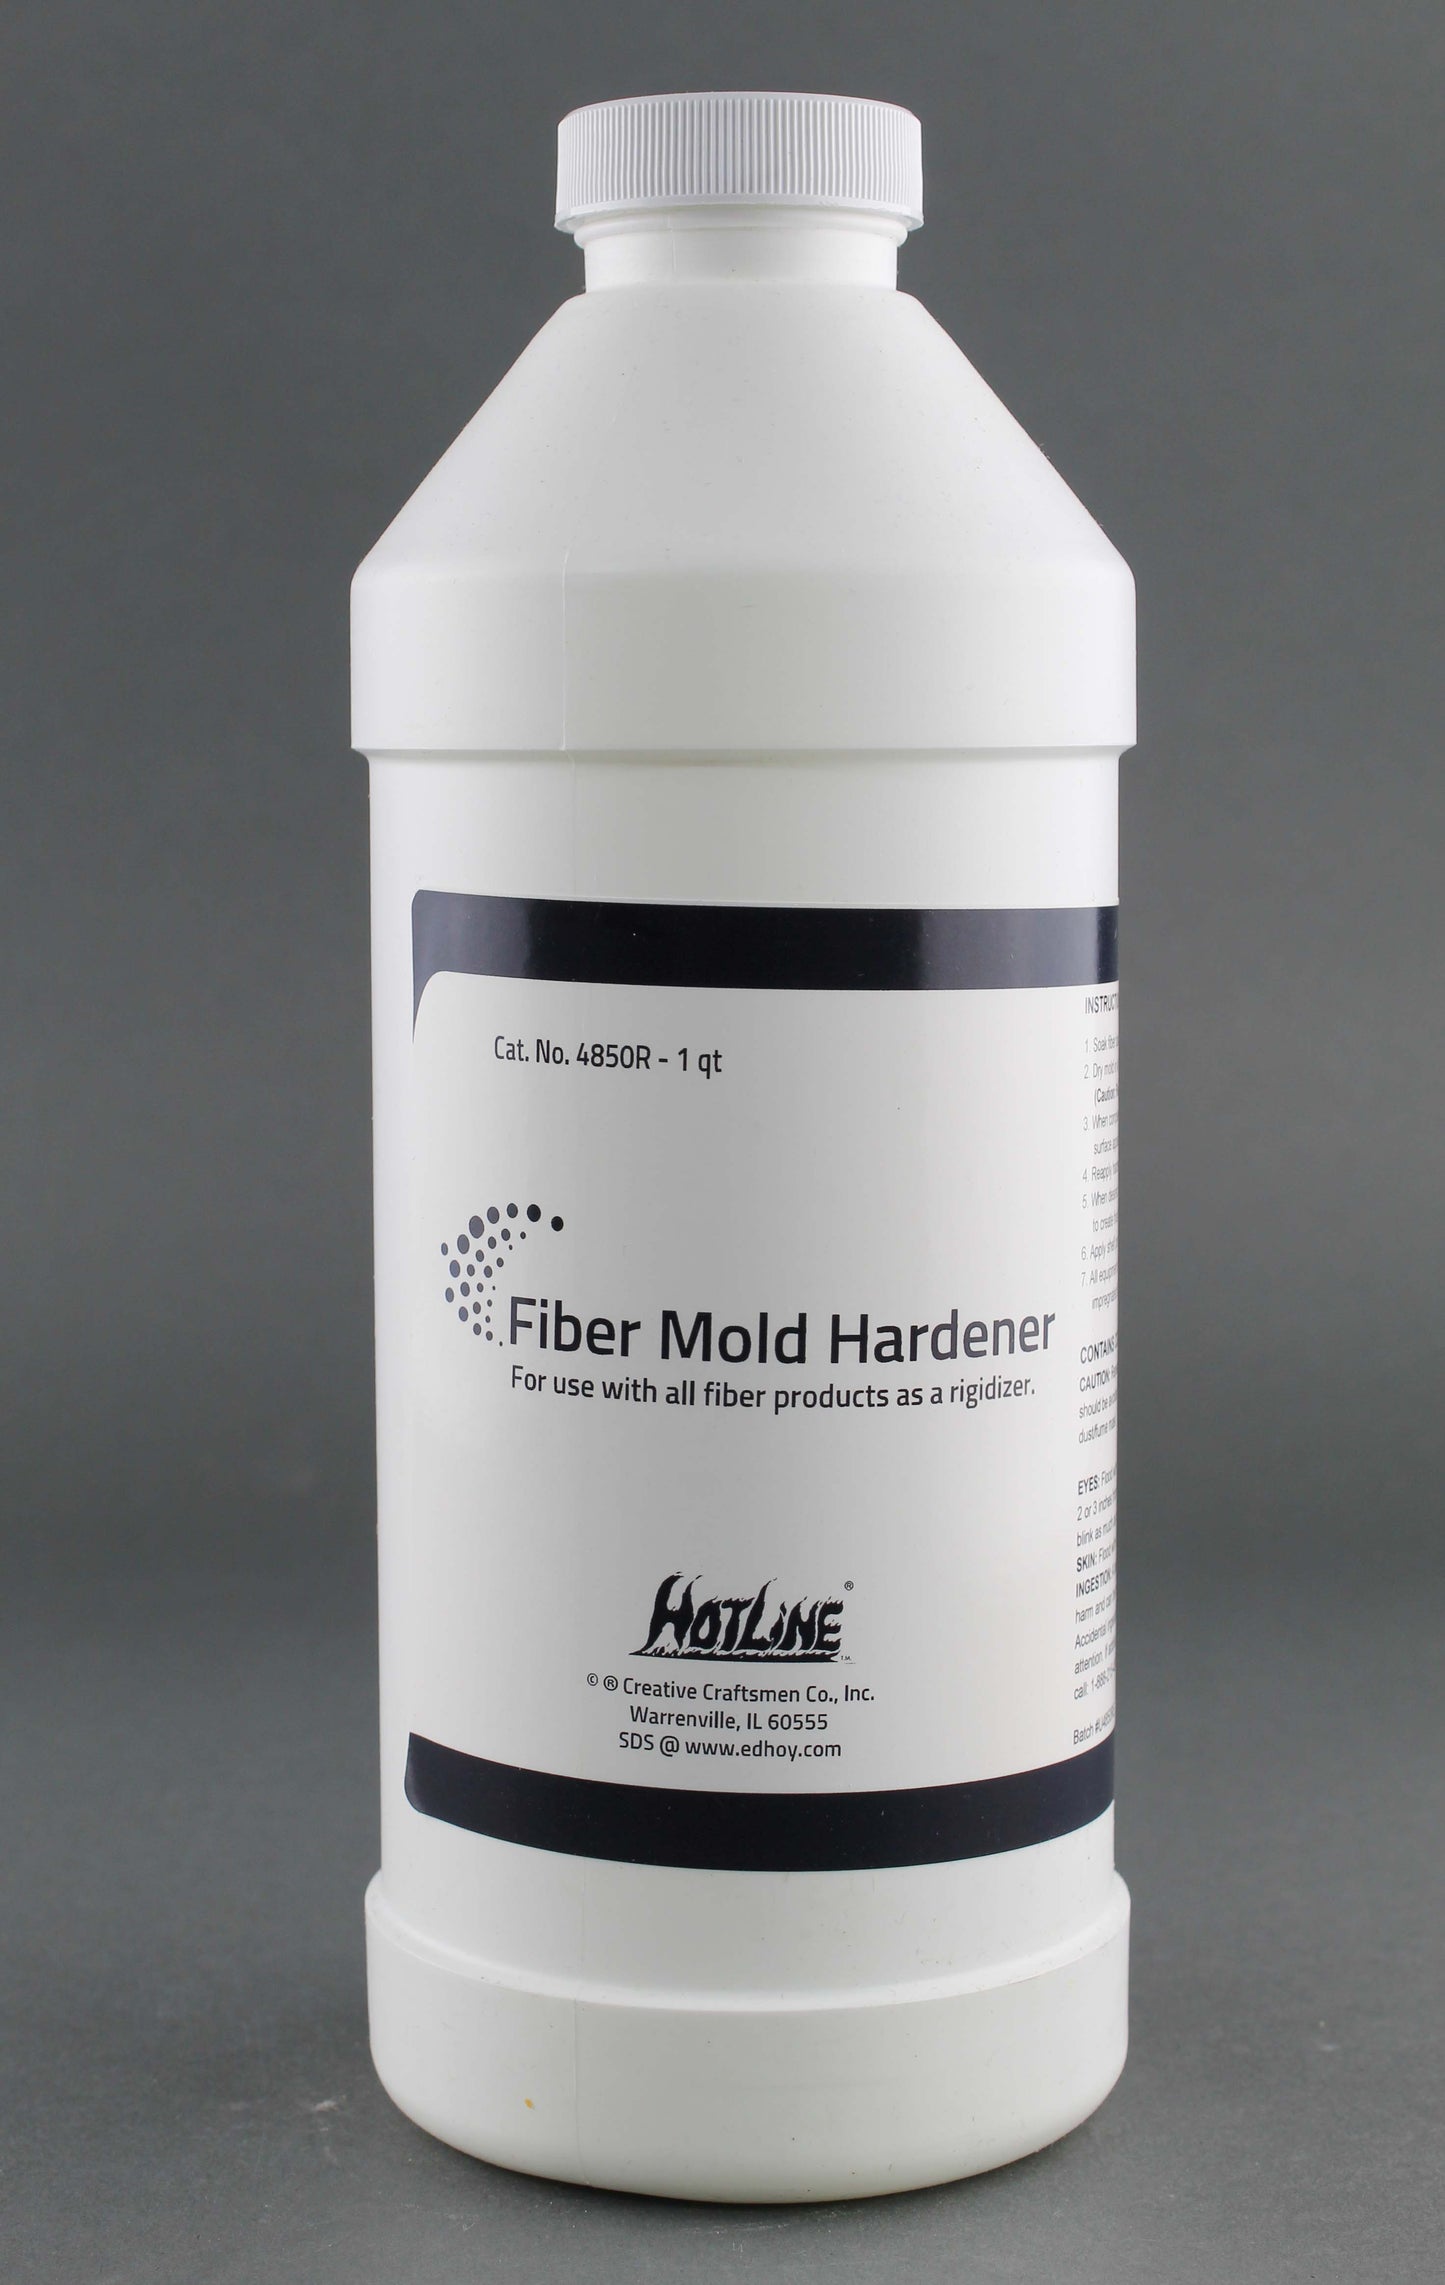 Fiber Mold Hardener